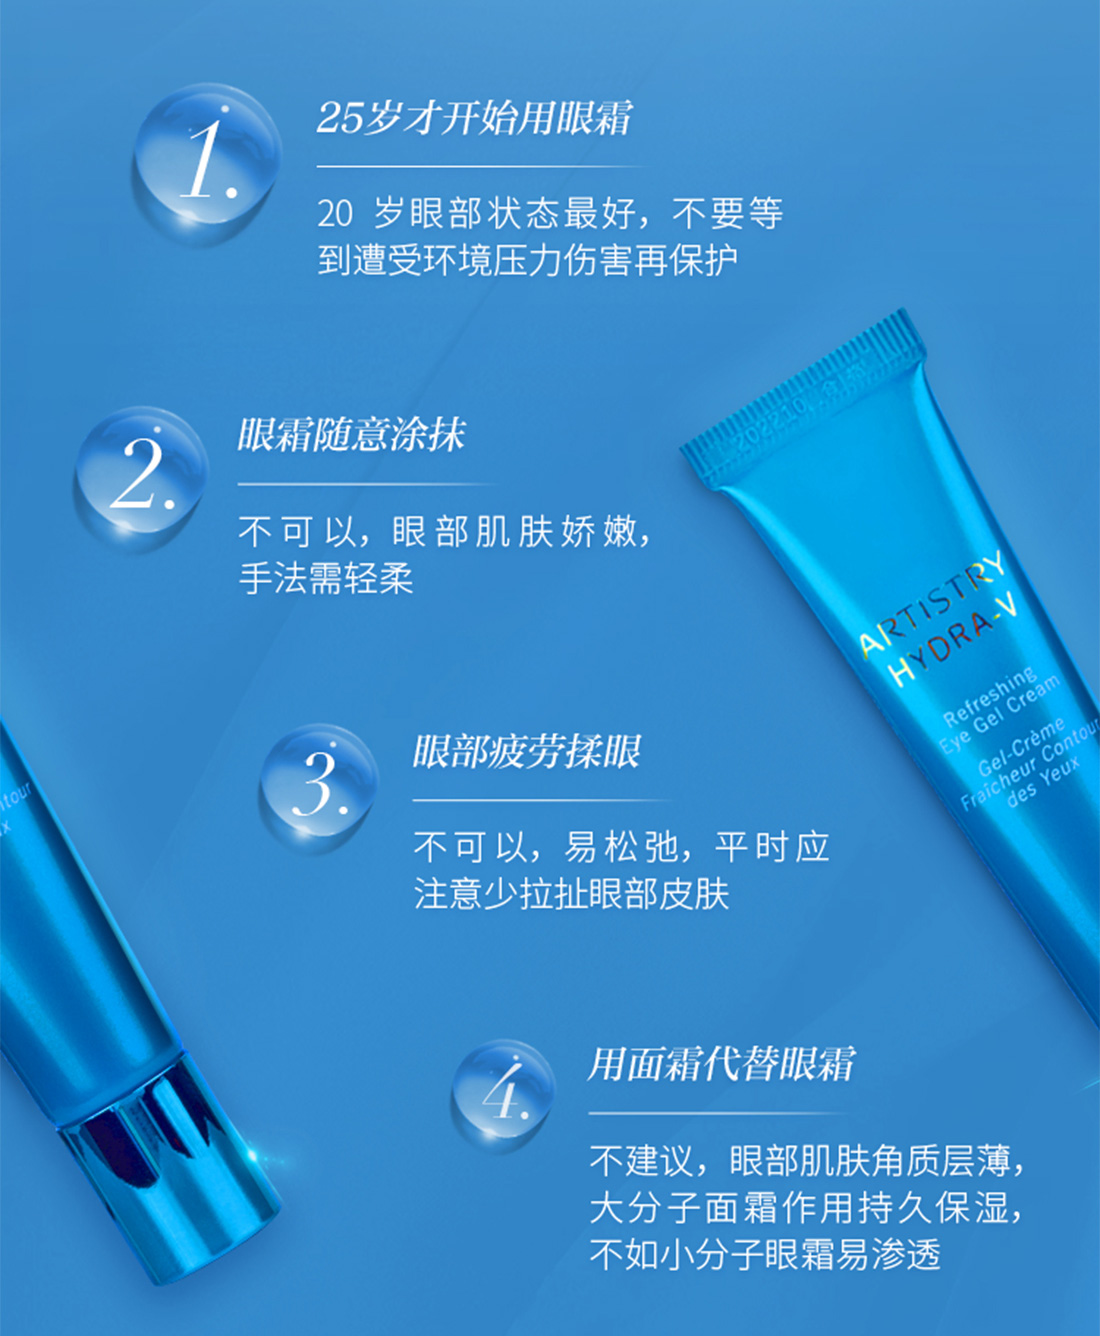 植萃滋養多效美肌防曬霜SPF50+ PA++++ | 植萃滋養系列 | 雅姿 | 香港安利網上購物